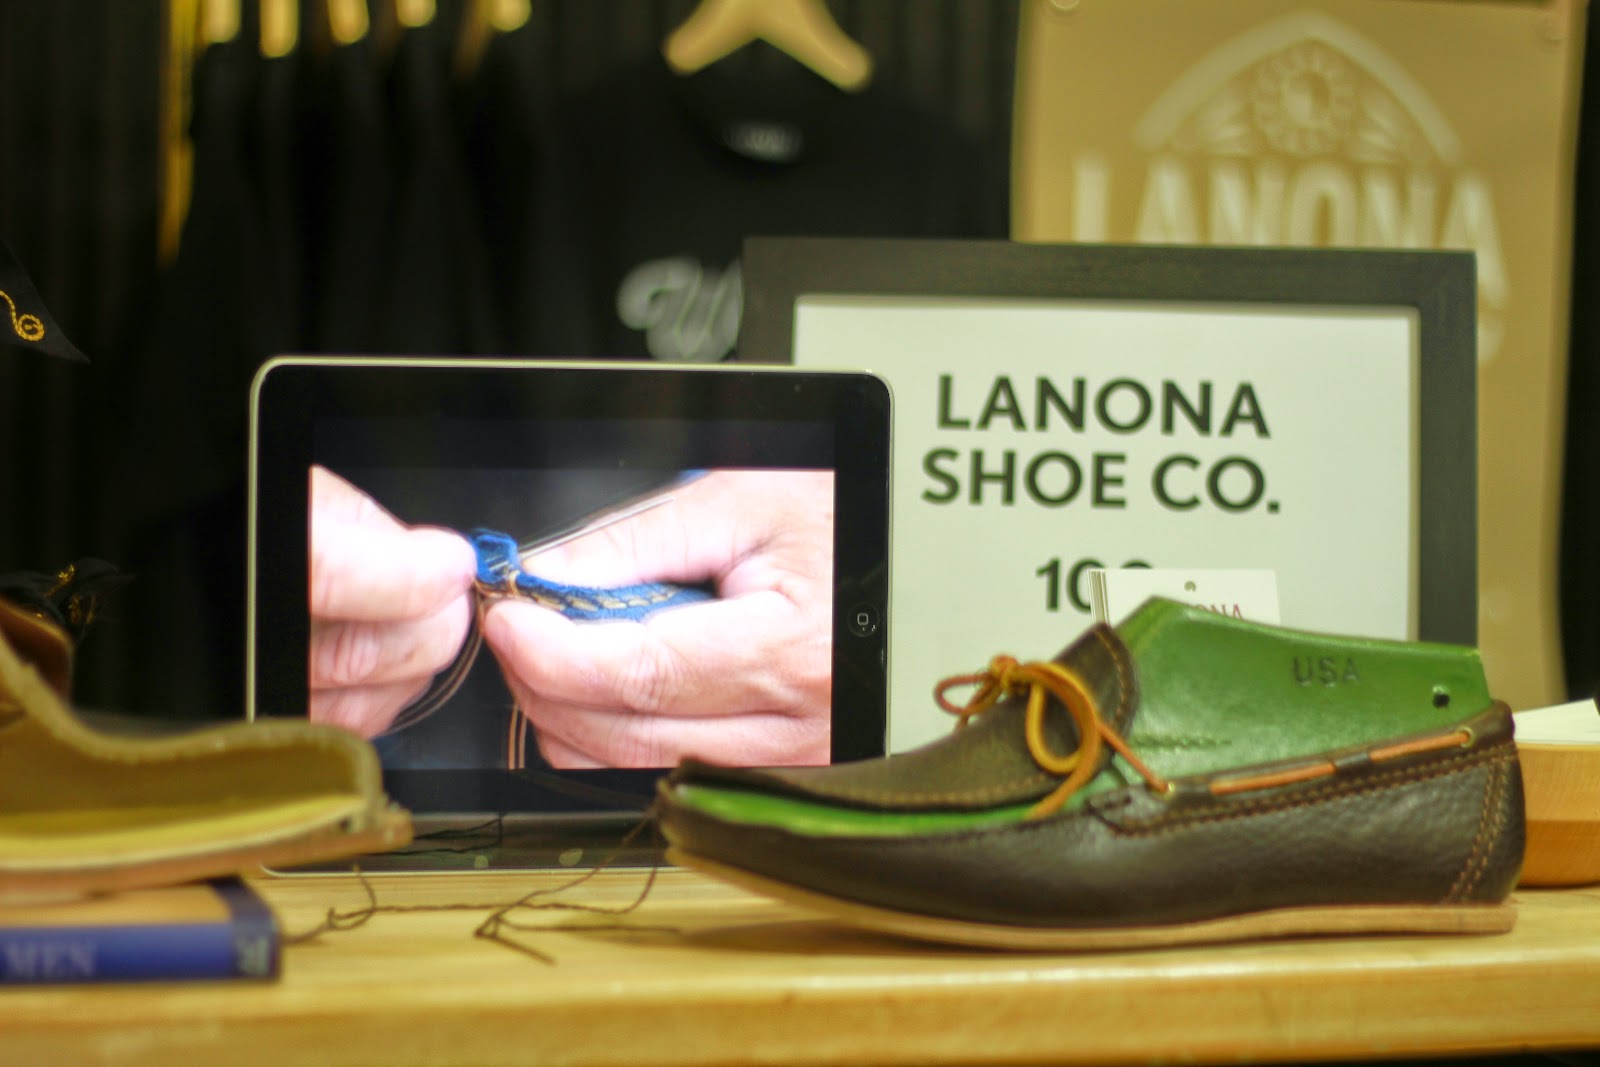 liberty-fairs-lanona-shoe-co